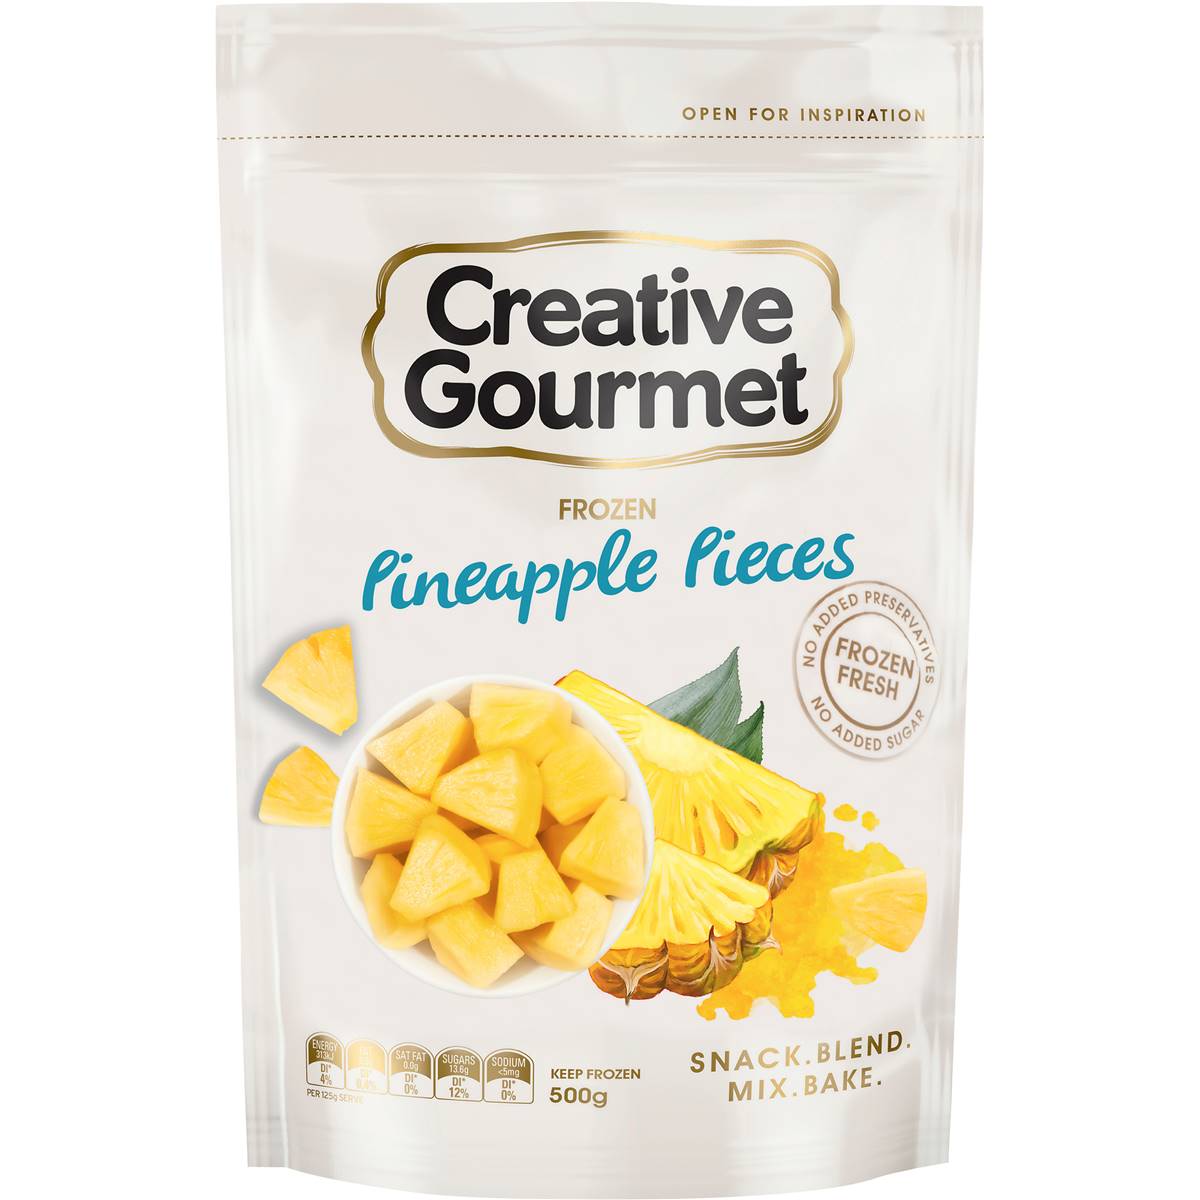 Creative Gourmet Frozen Pineapple Pieces 500g is halal suitable, vegan,  vegetarian, gluten-free